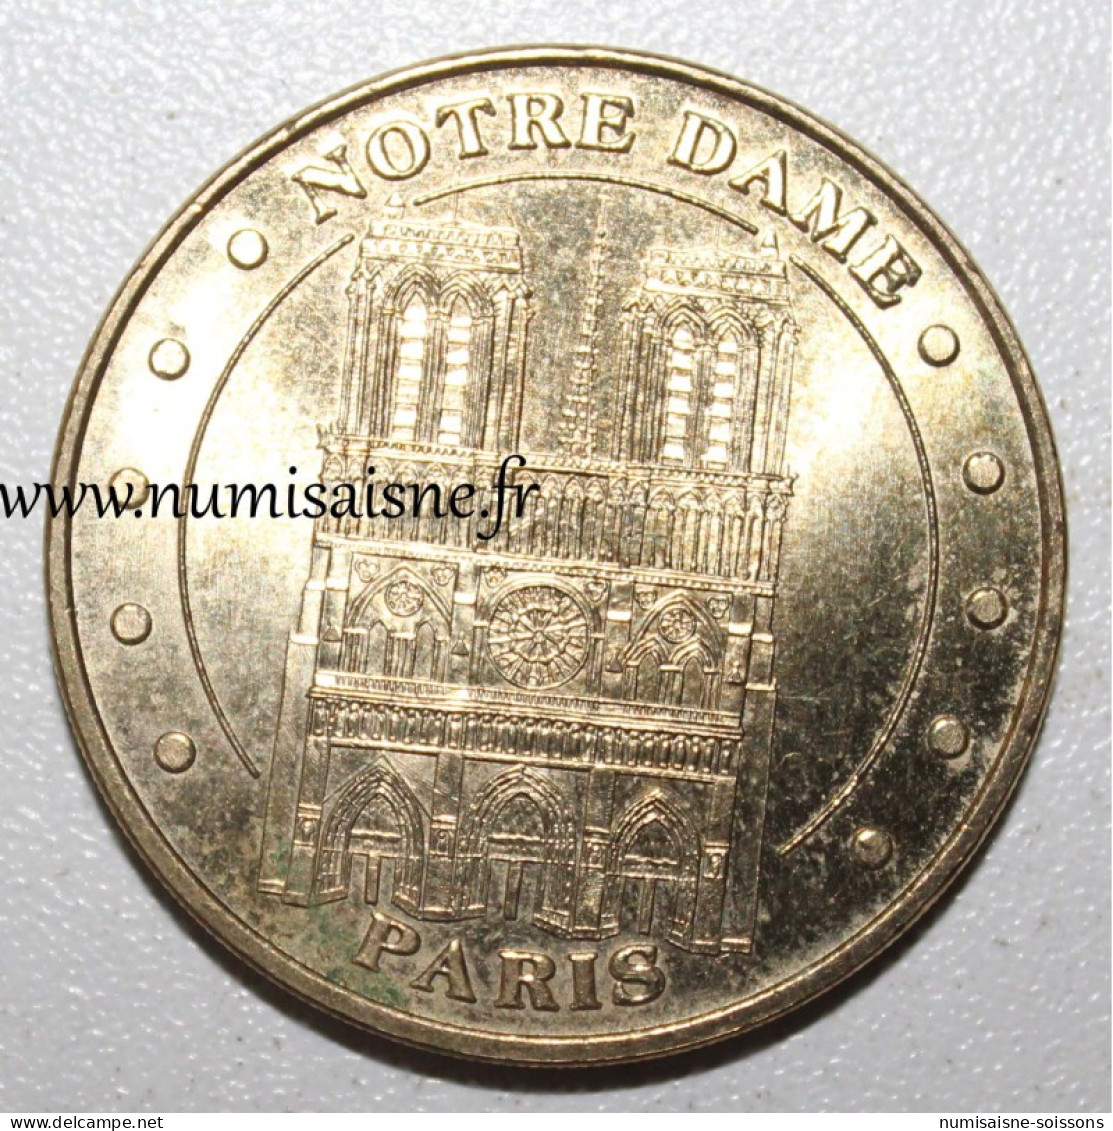 75 - PARIS - CATHEDRALE NOTRE DAME - Monnaie De Paris - 2011 - TTB - 2011